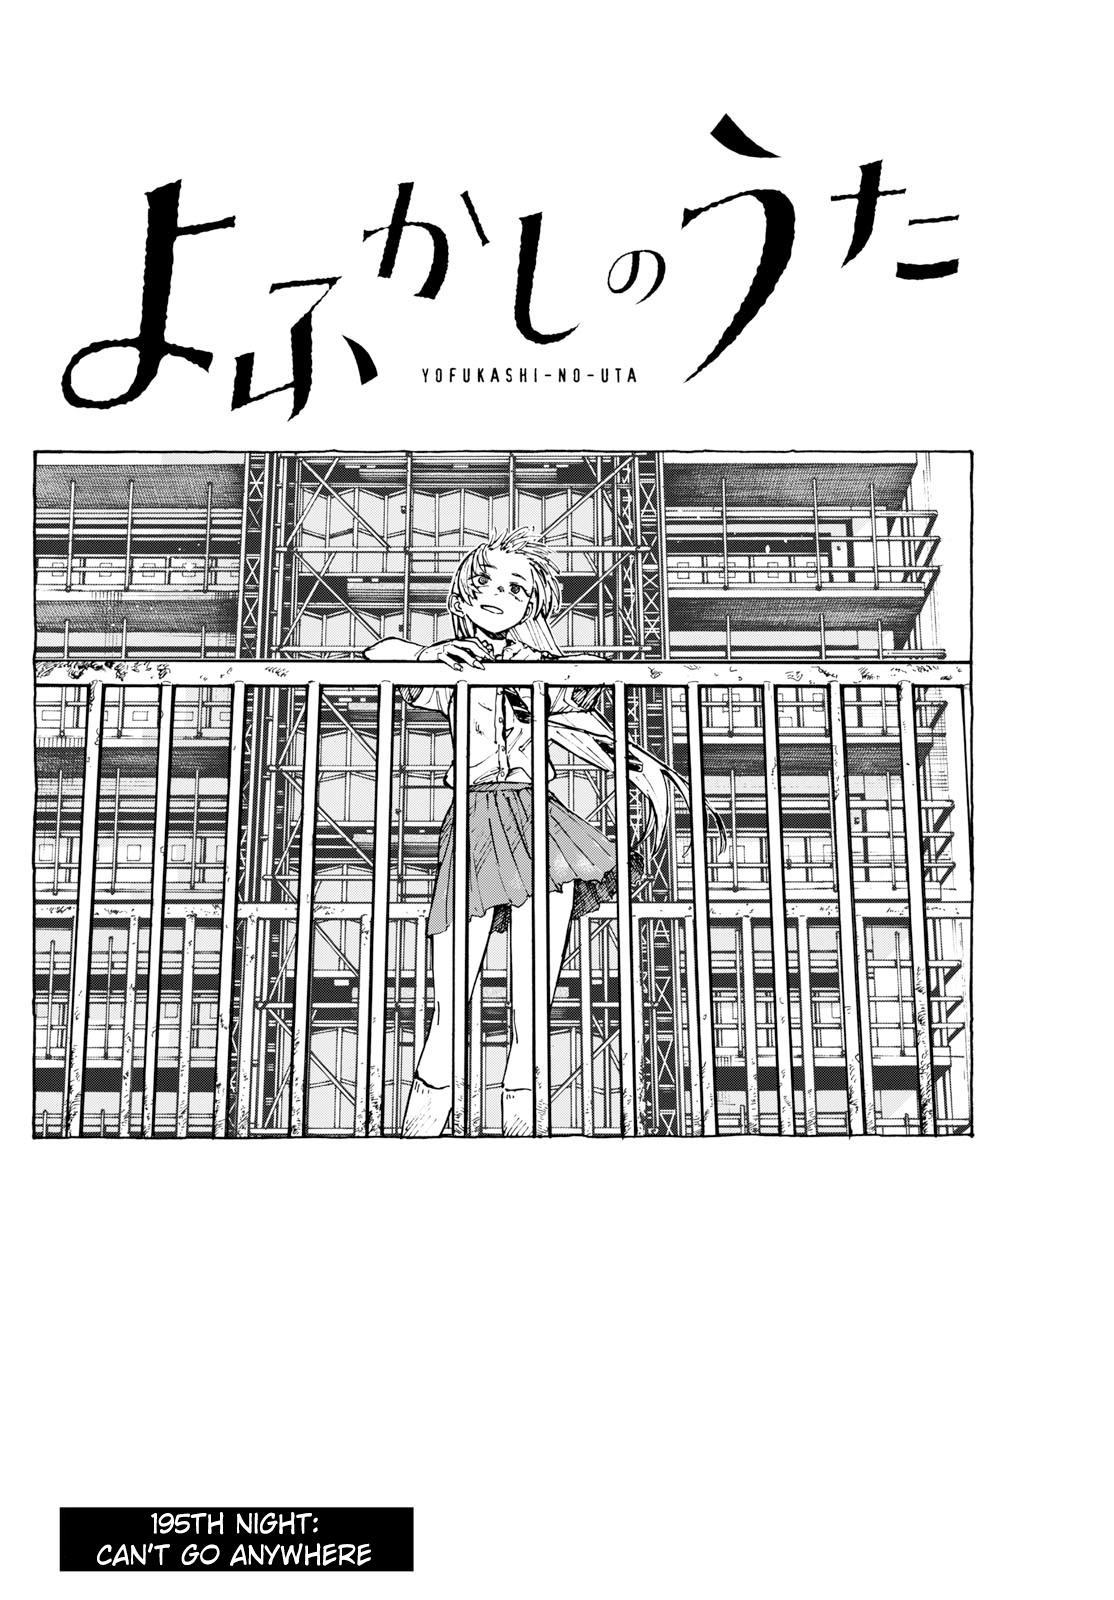 Yofukashi no Uta Vol.6 Ch.169 Page 18 - Mangago